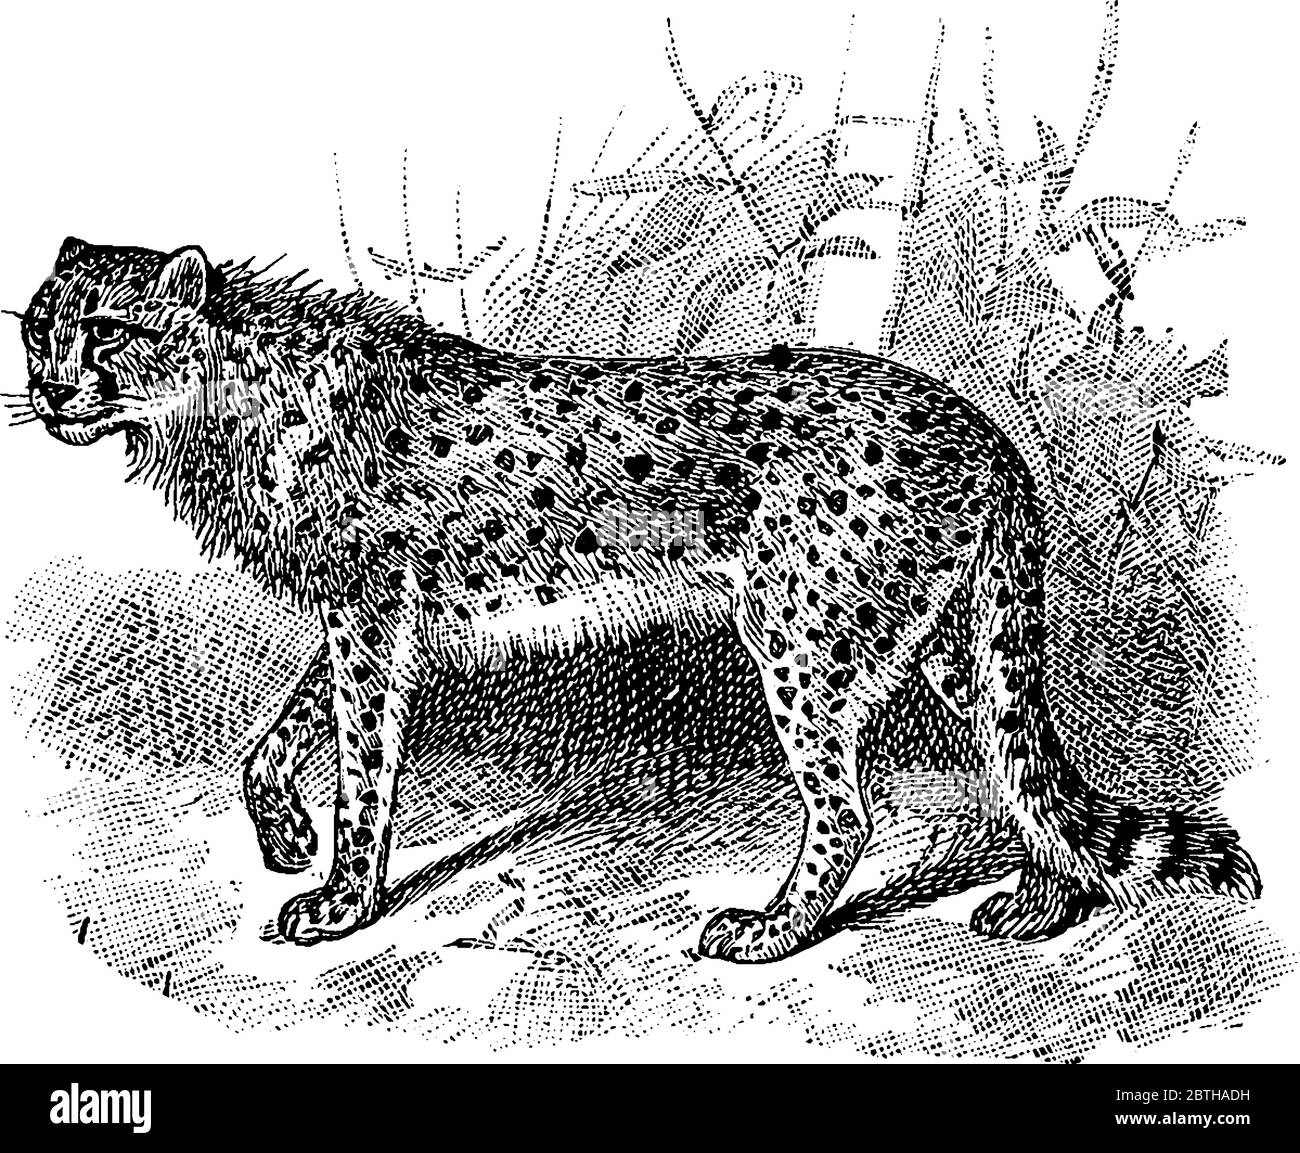 Der Geparde ist eine große Katze aus der Unterfamilie Felinae, einem Jagdleopard. Es hat eine kurze Mähne Kamm von Haaren, die von der Rückseite des Kopfes zum sh Stock Vektor